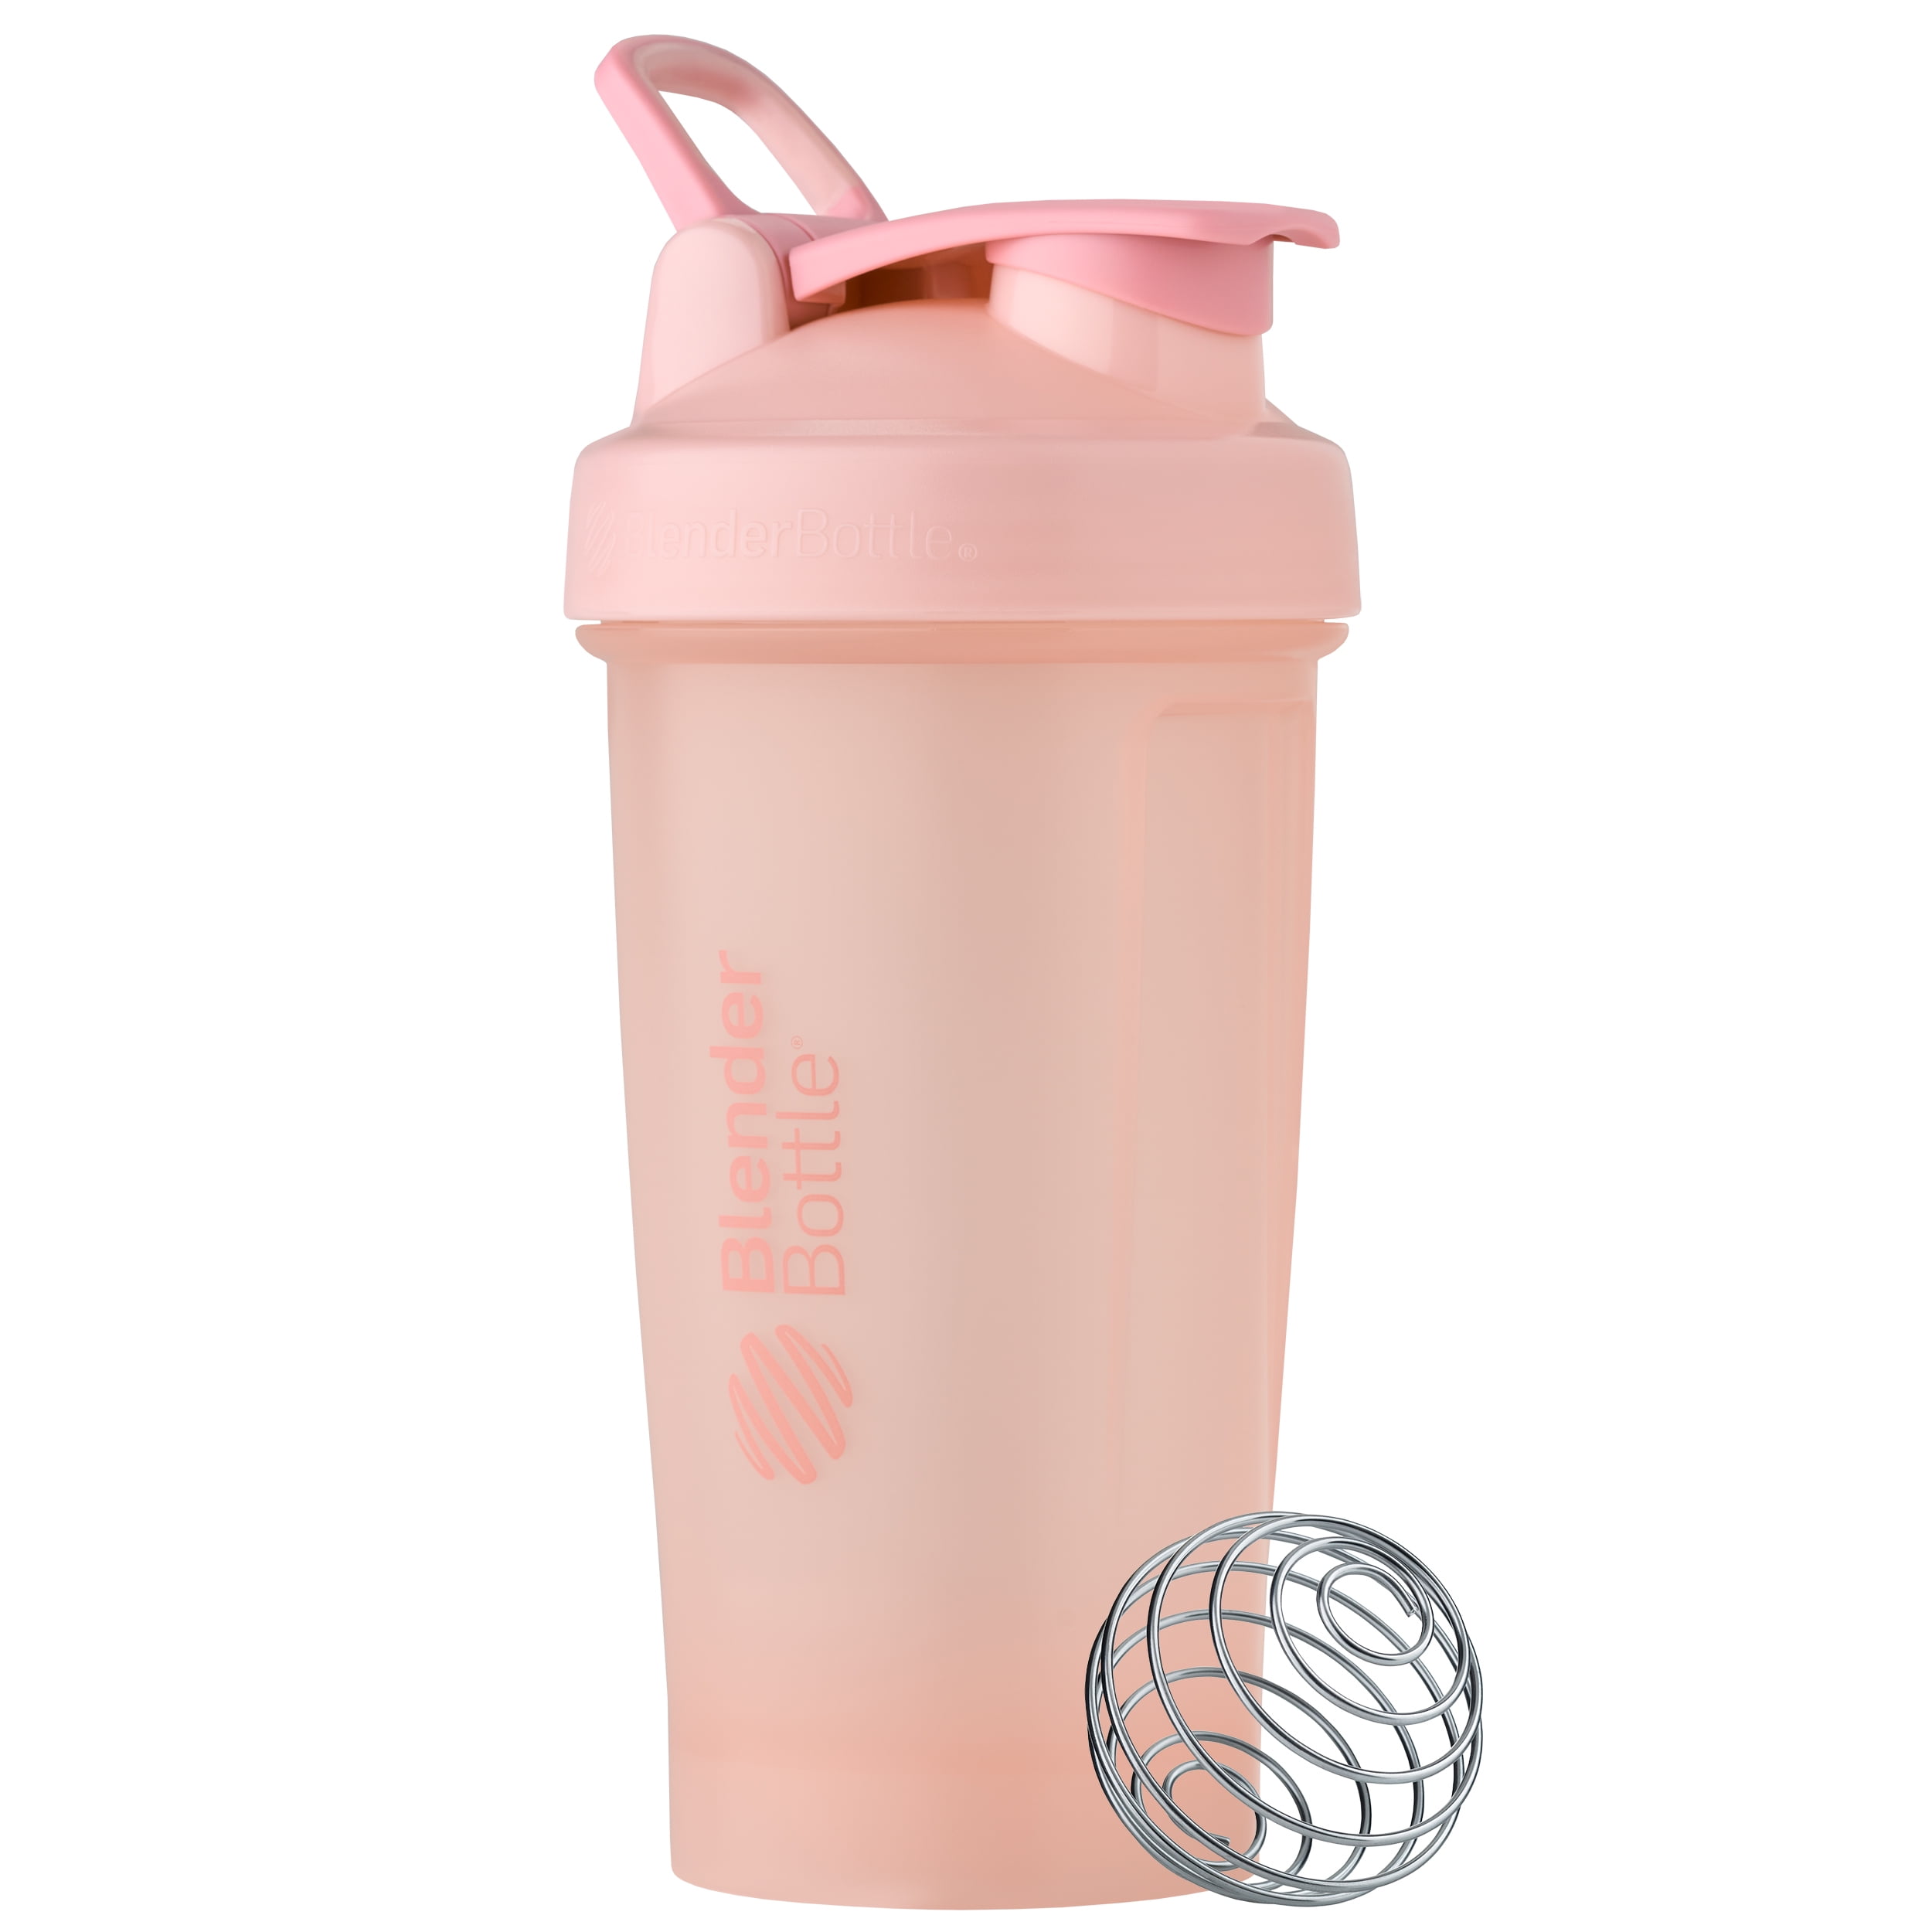 BlenderBottle V2 Cup, 24oz Pink - Walmart.com